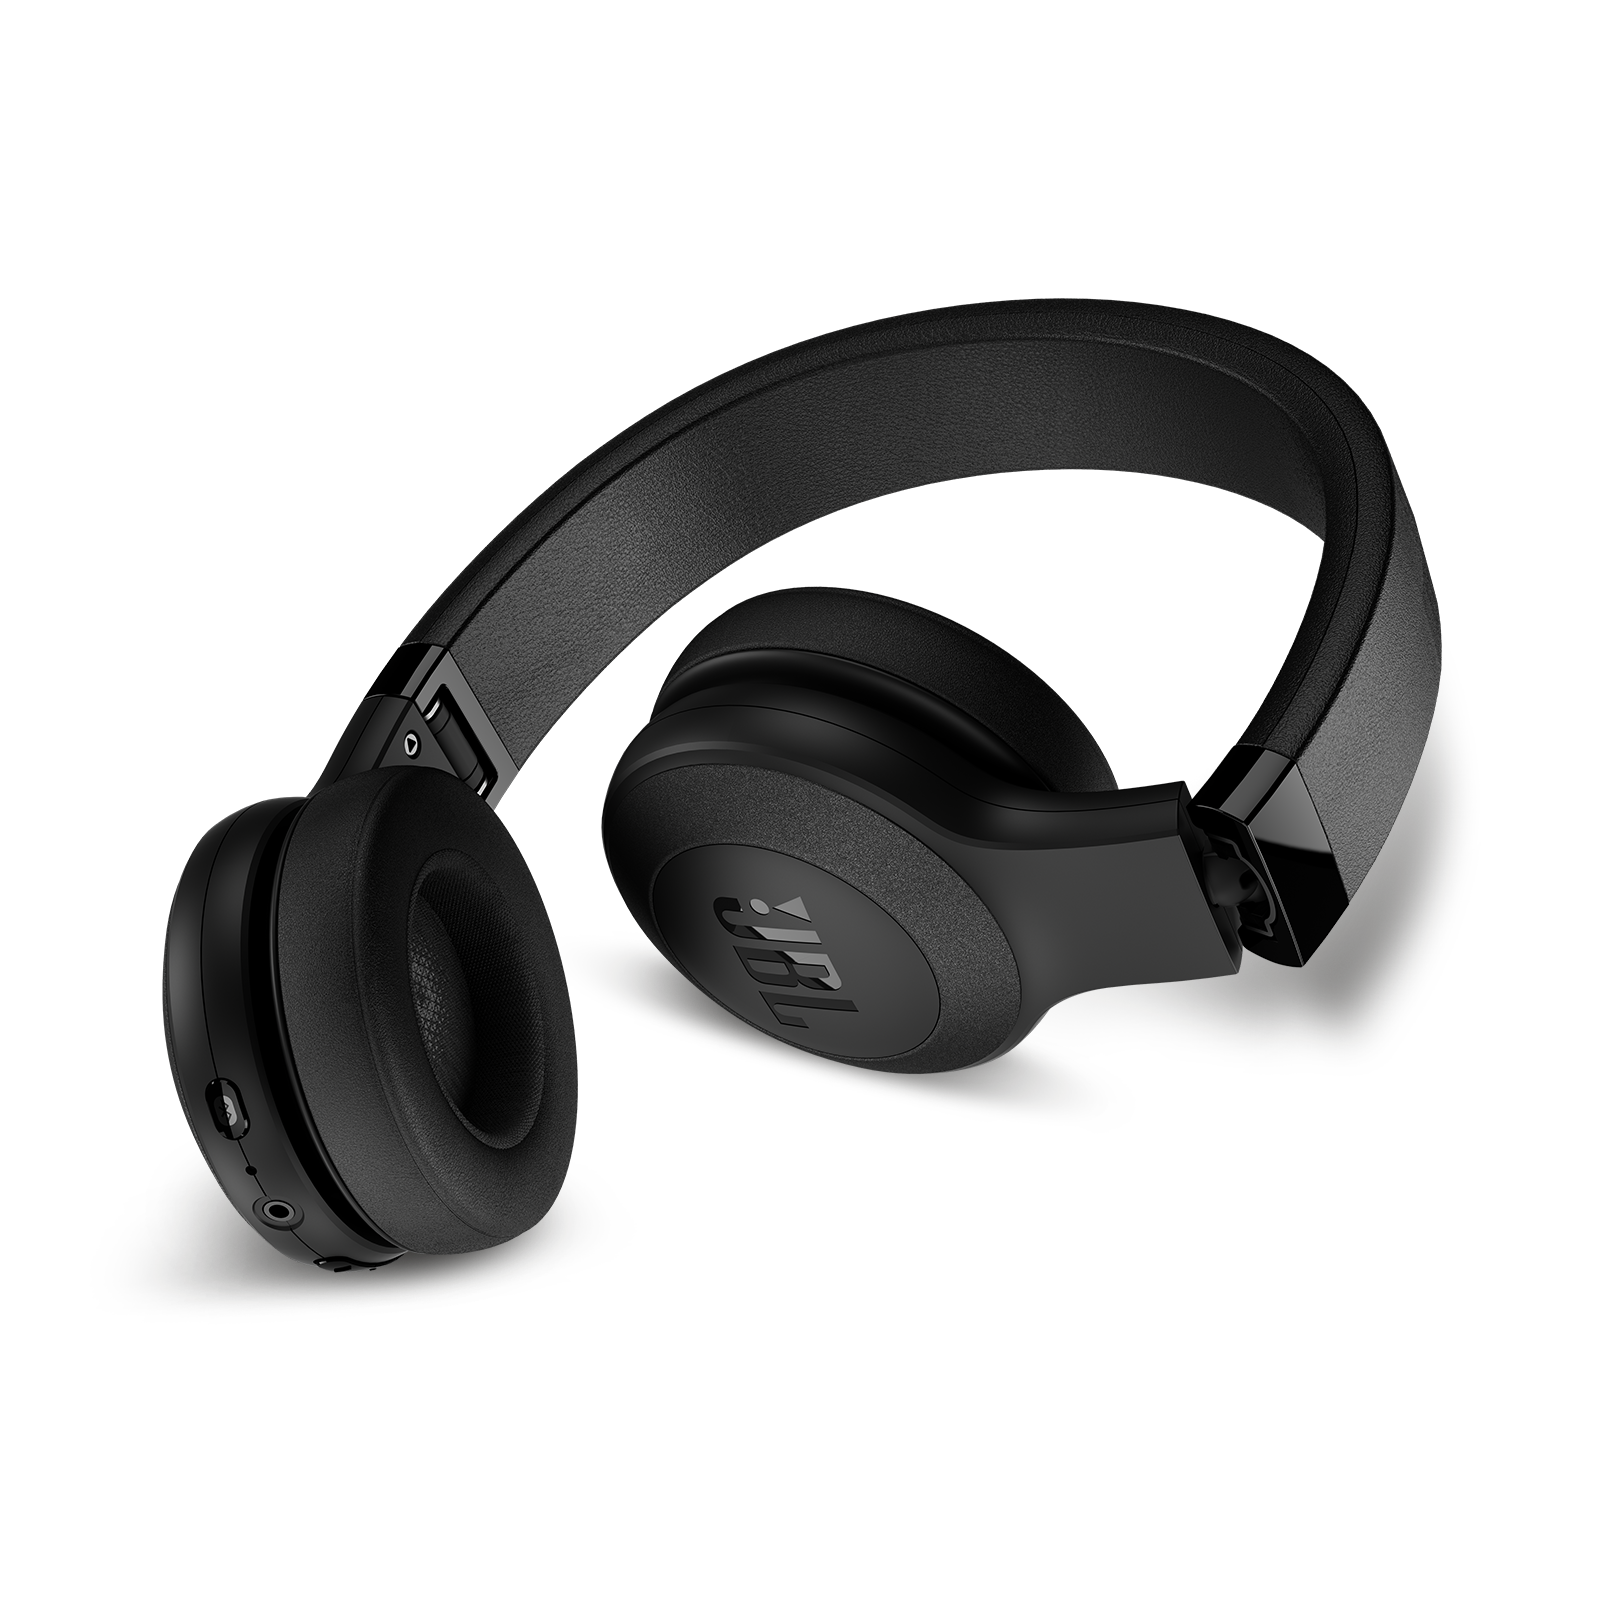 C45BT - Black Matte - Wireless on-ear headphones - Back